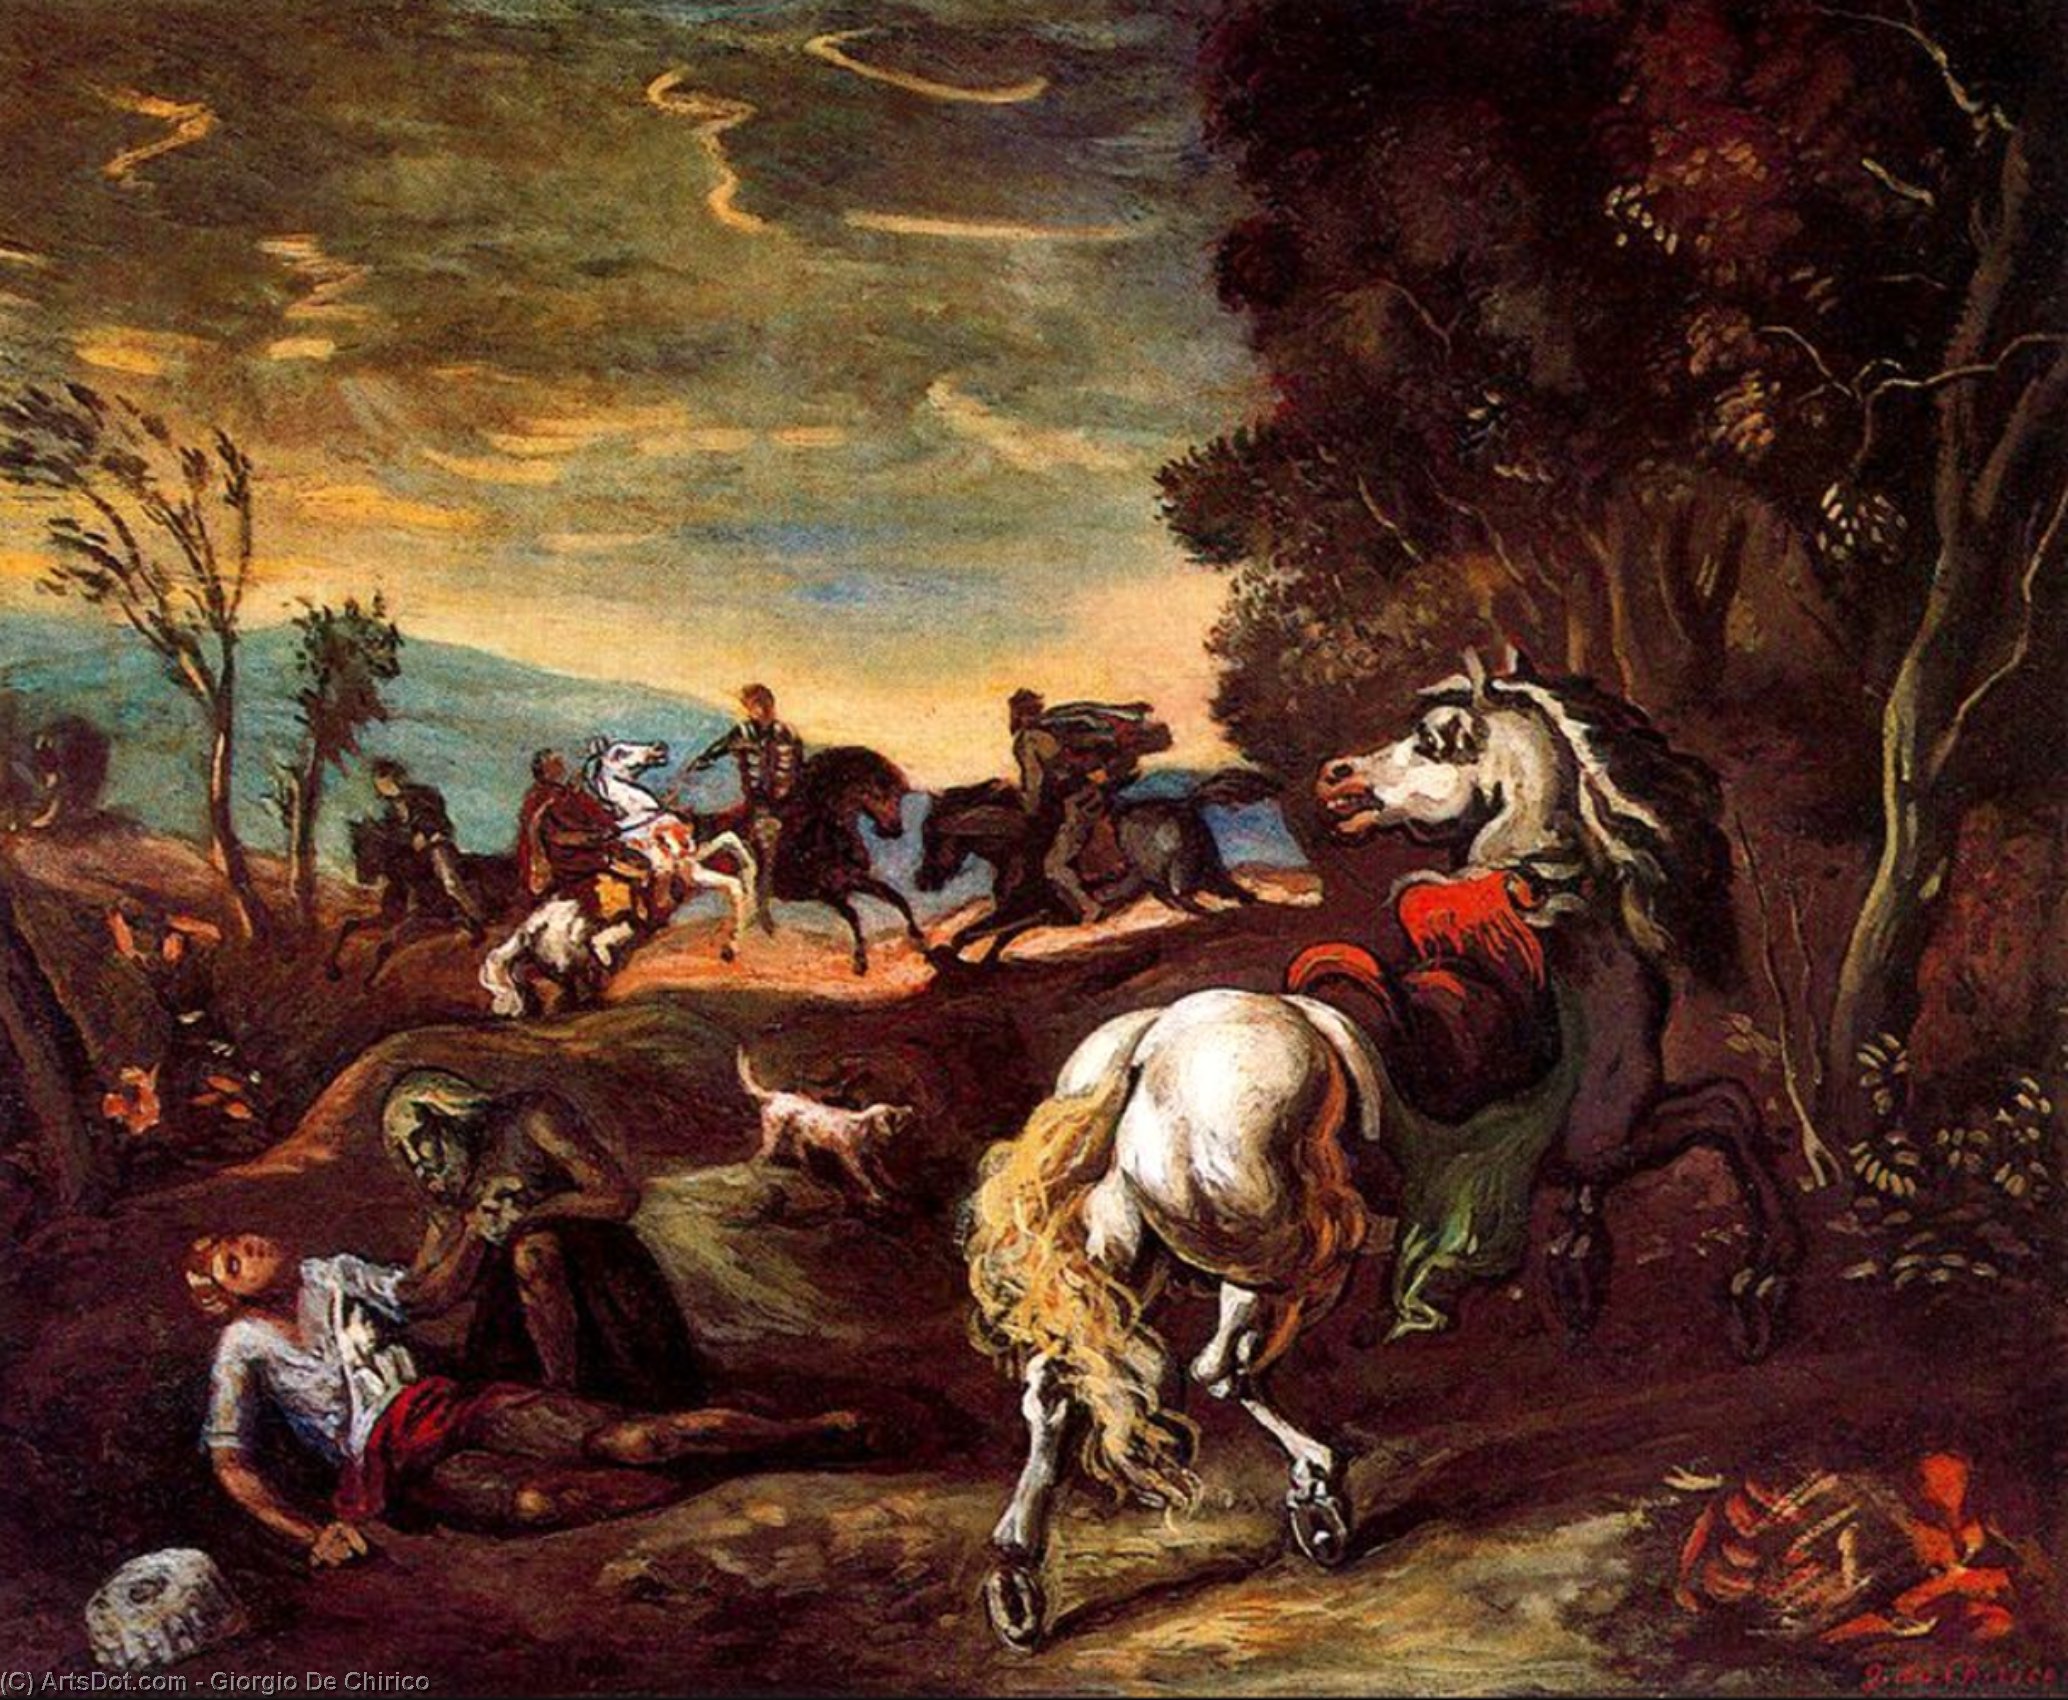 WikiOO.org - Enciclopédia das Belas Artes - Pintura, Arte por Giorgio De Chirico - The horse has gone